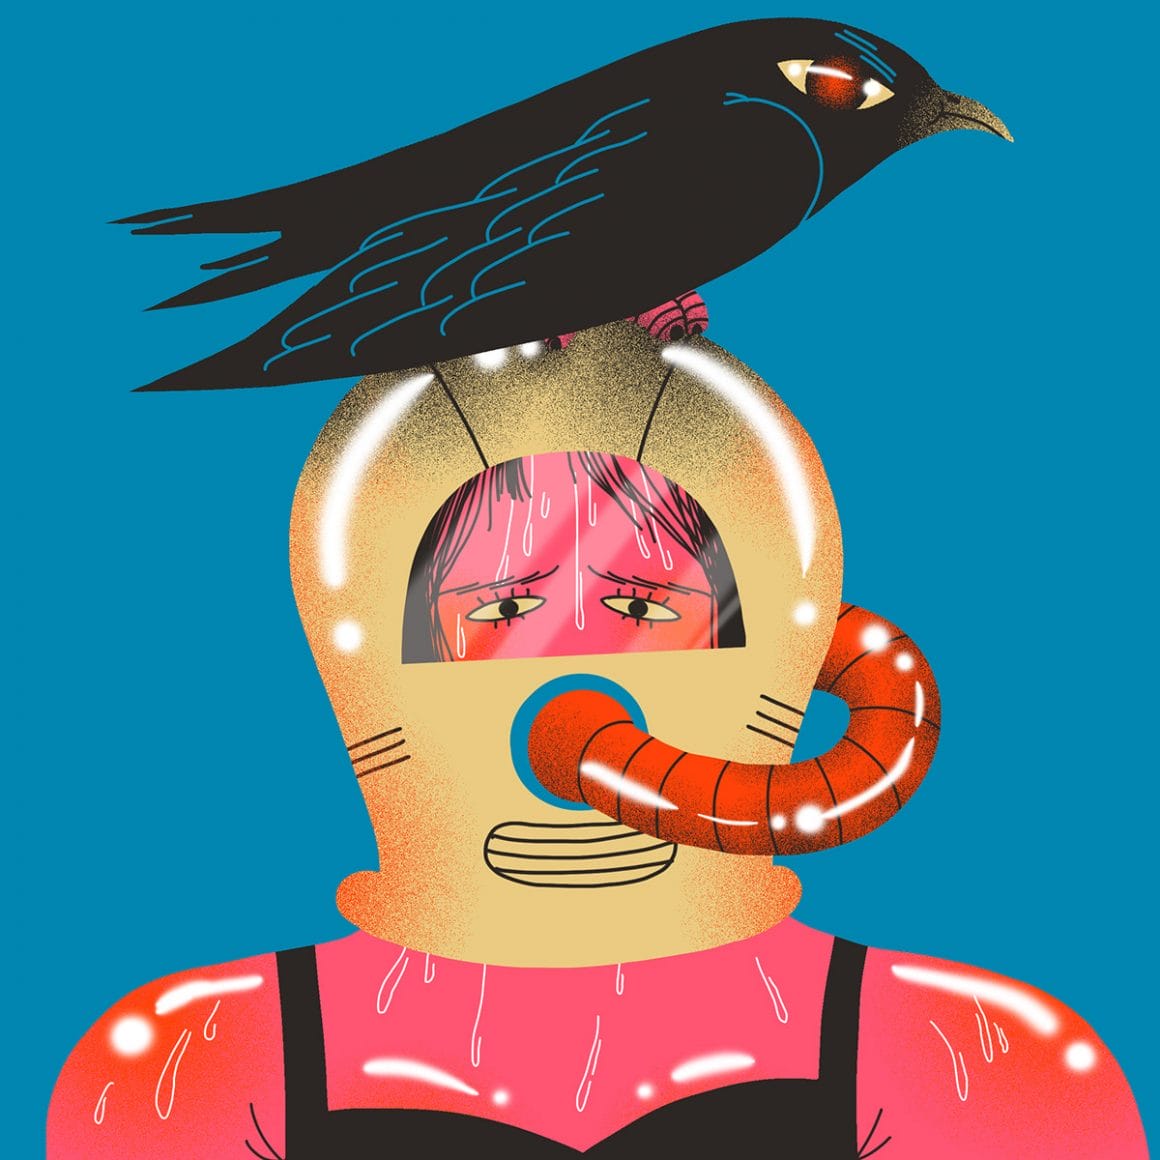 Statement illustrations par Genie Espinosa. Un personnage féminin dans un scaphandre, surmonté d'un corbeau. 